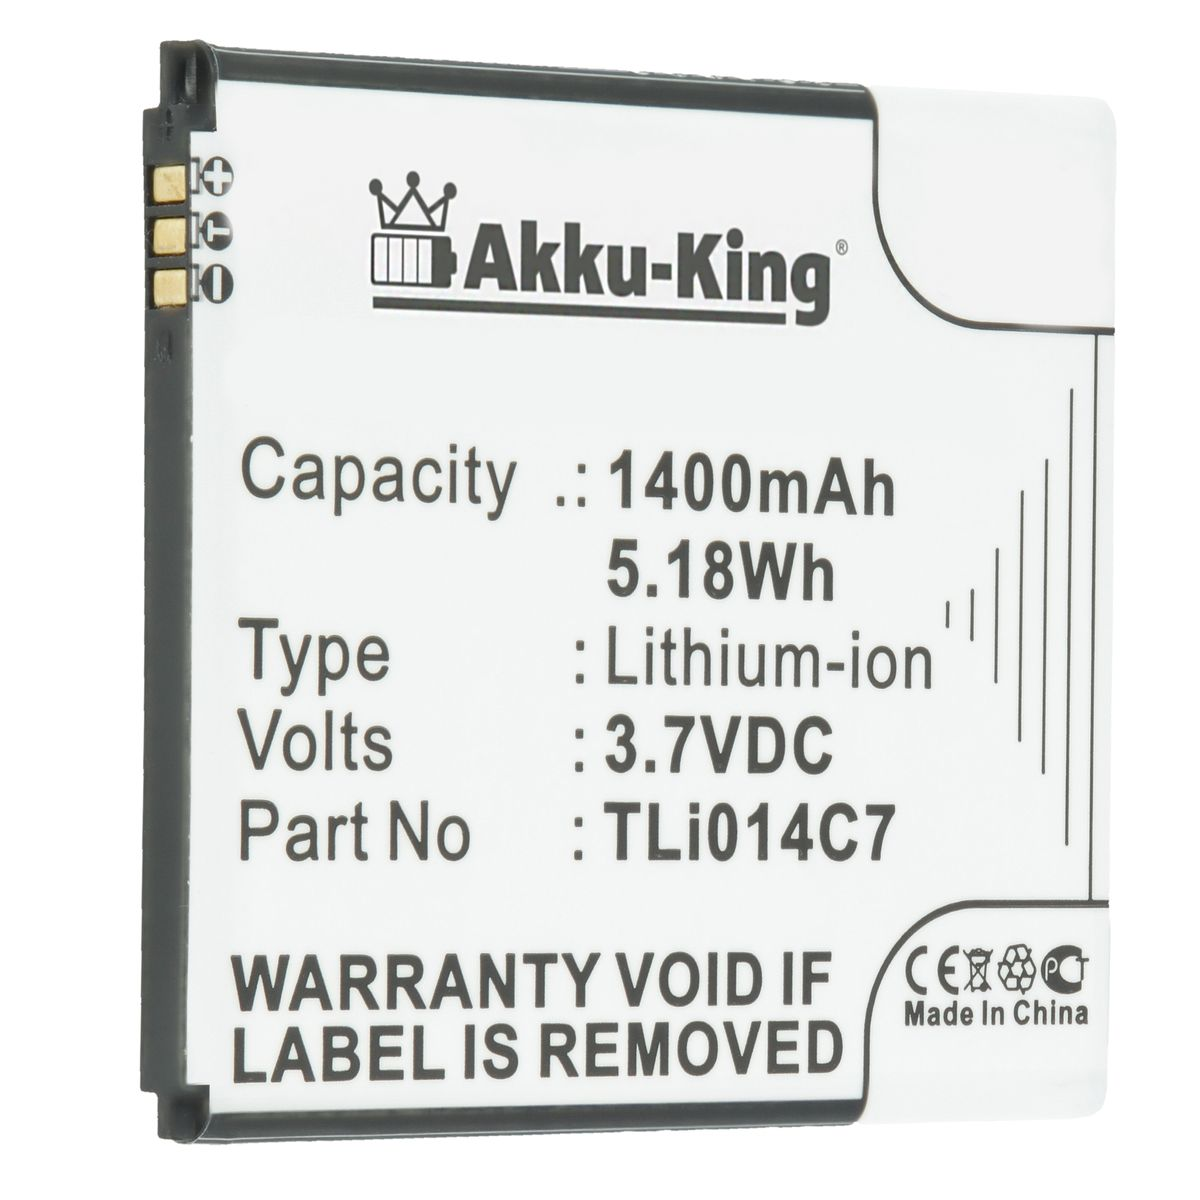 AKKU-KING Akku für 1400mAh TLi014C7 Volt, Li-Ion 3.7 Alcatel Handy-Akku